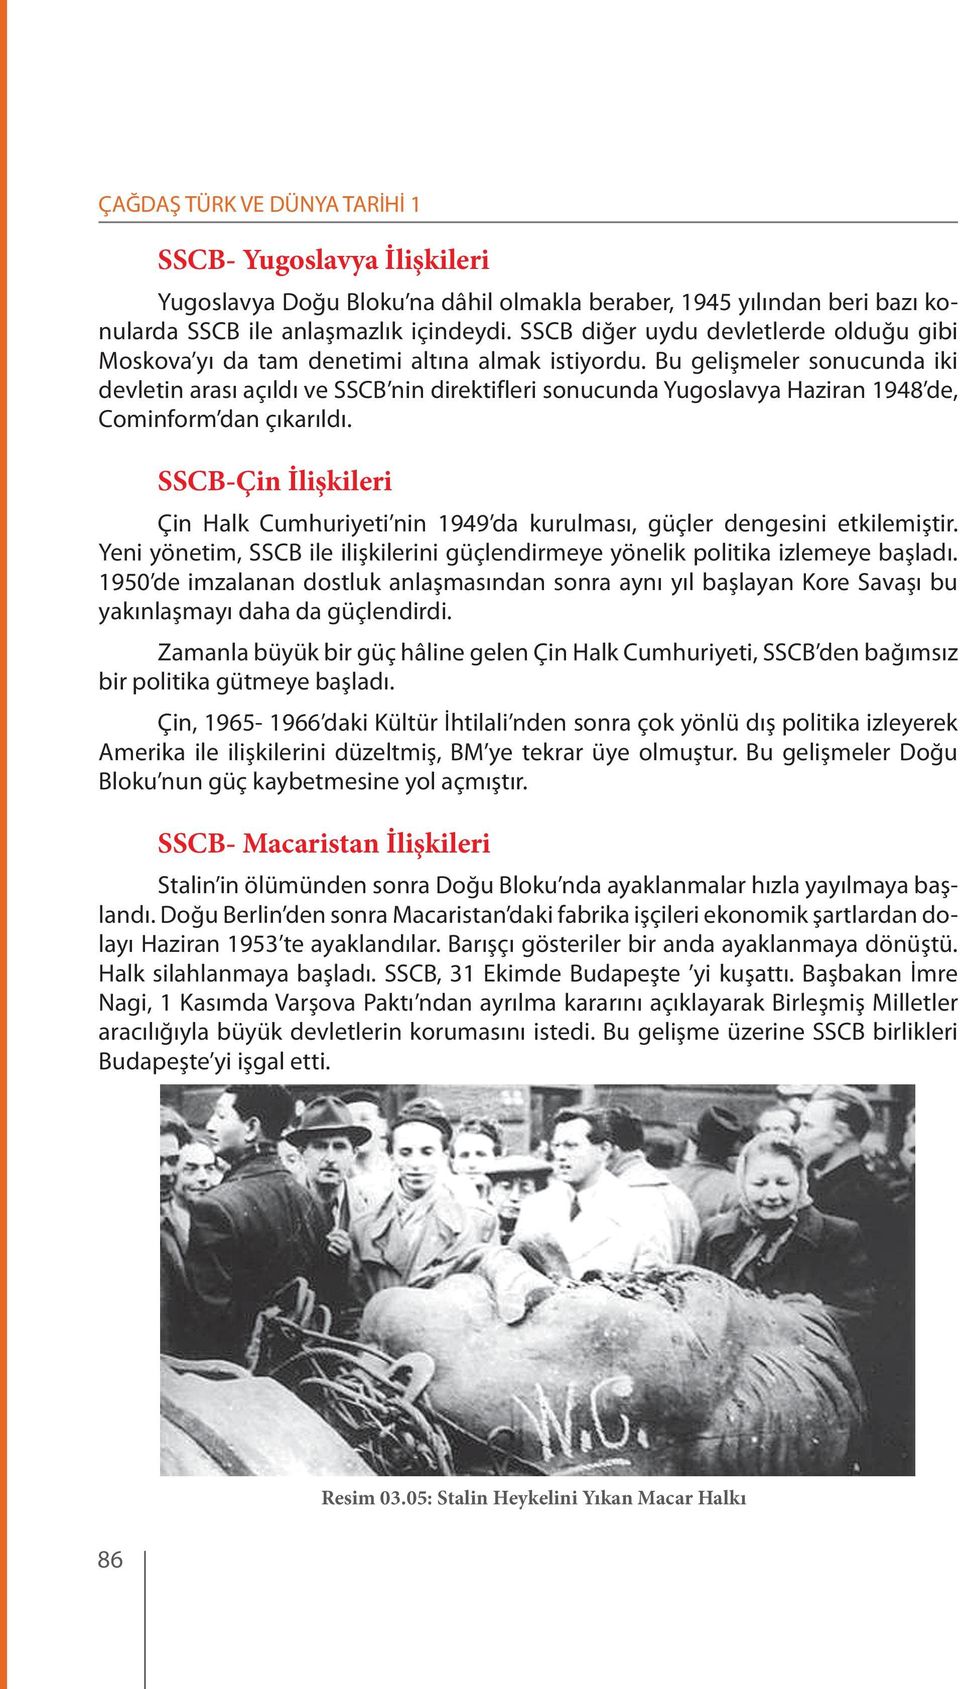 Bu gelişmeler sonucunda iki devletin arası açıldı ve SSCB nin direktifleri sonucunda Yugoslavya Haziran 1948 de, Cominform dan çıkarıldı.